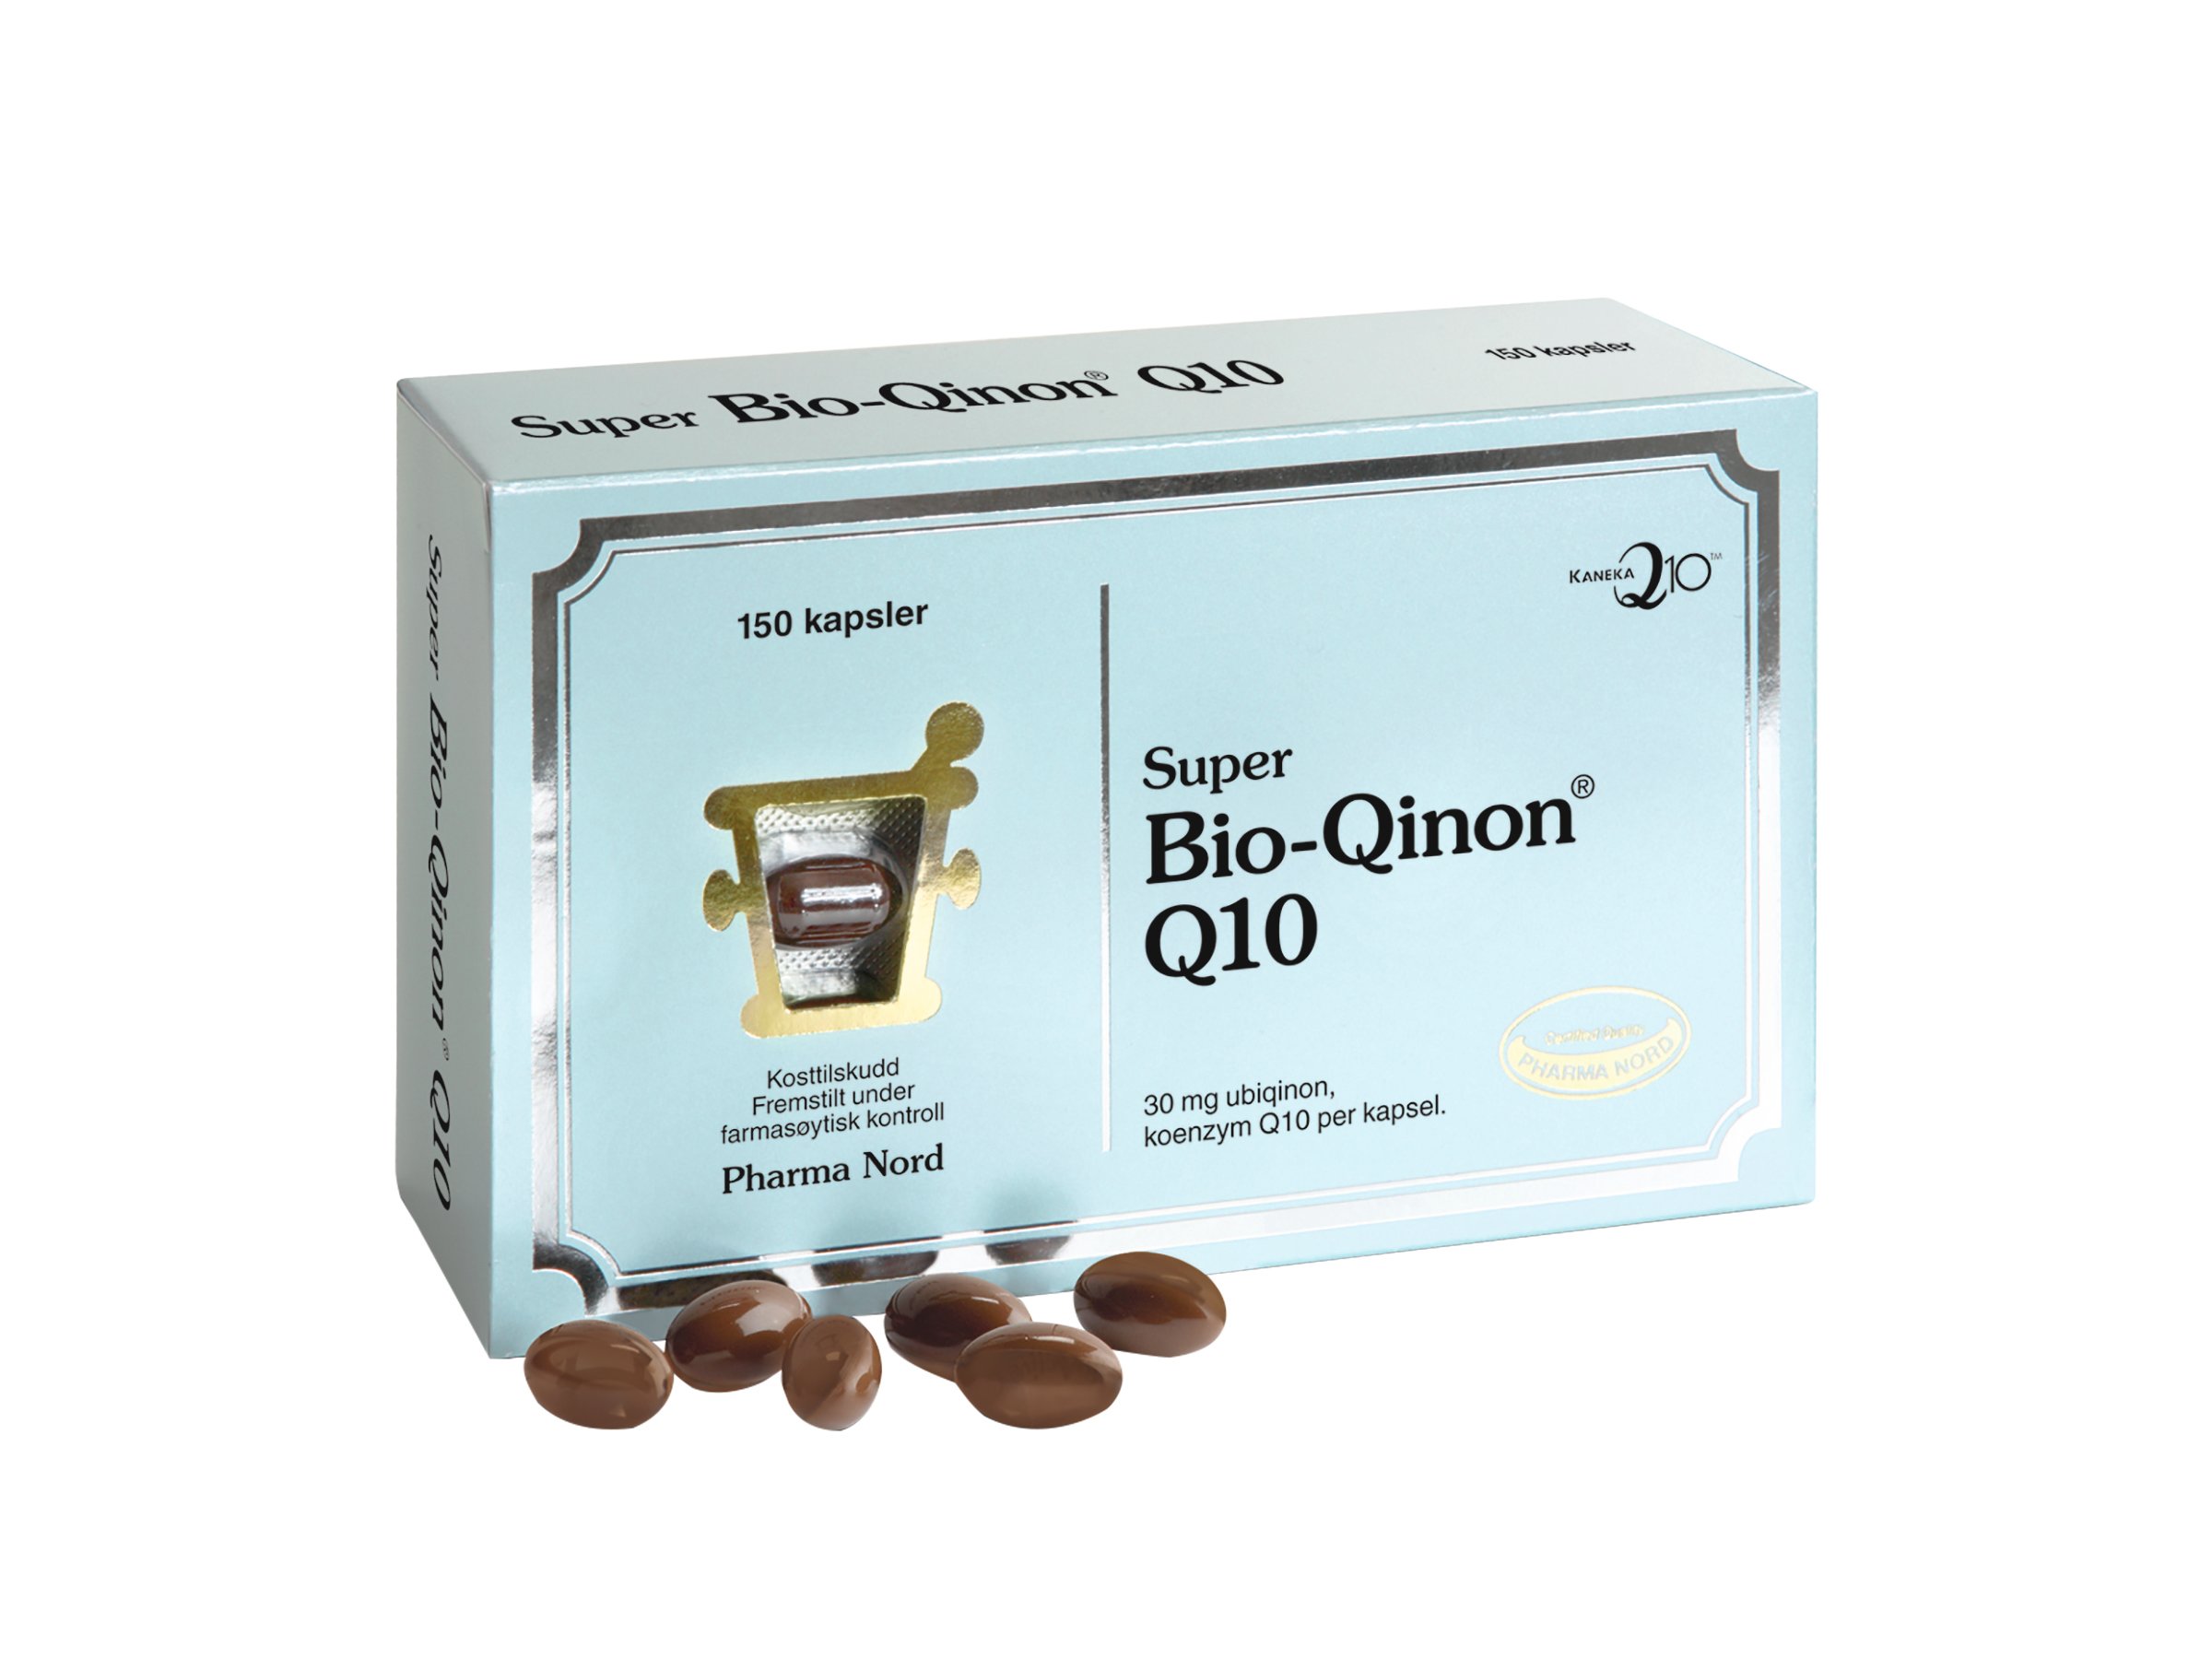 Pharma Nord Bio-Qinon Active Q10 30 mg kapsler, 150 stk.